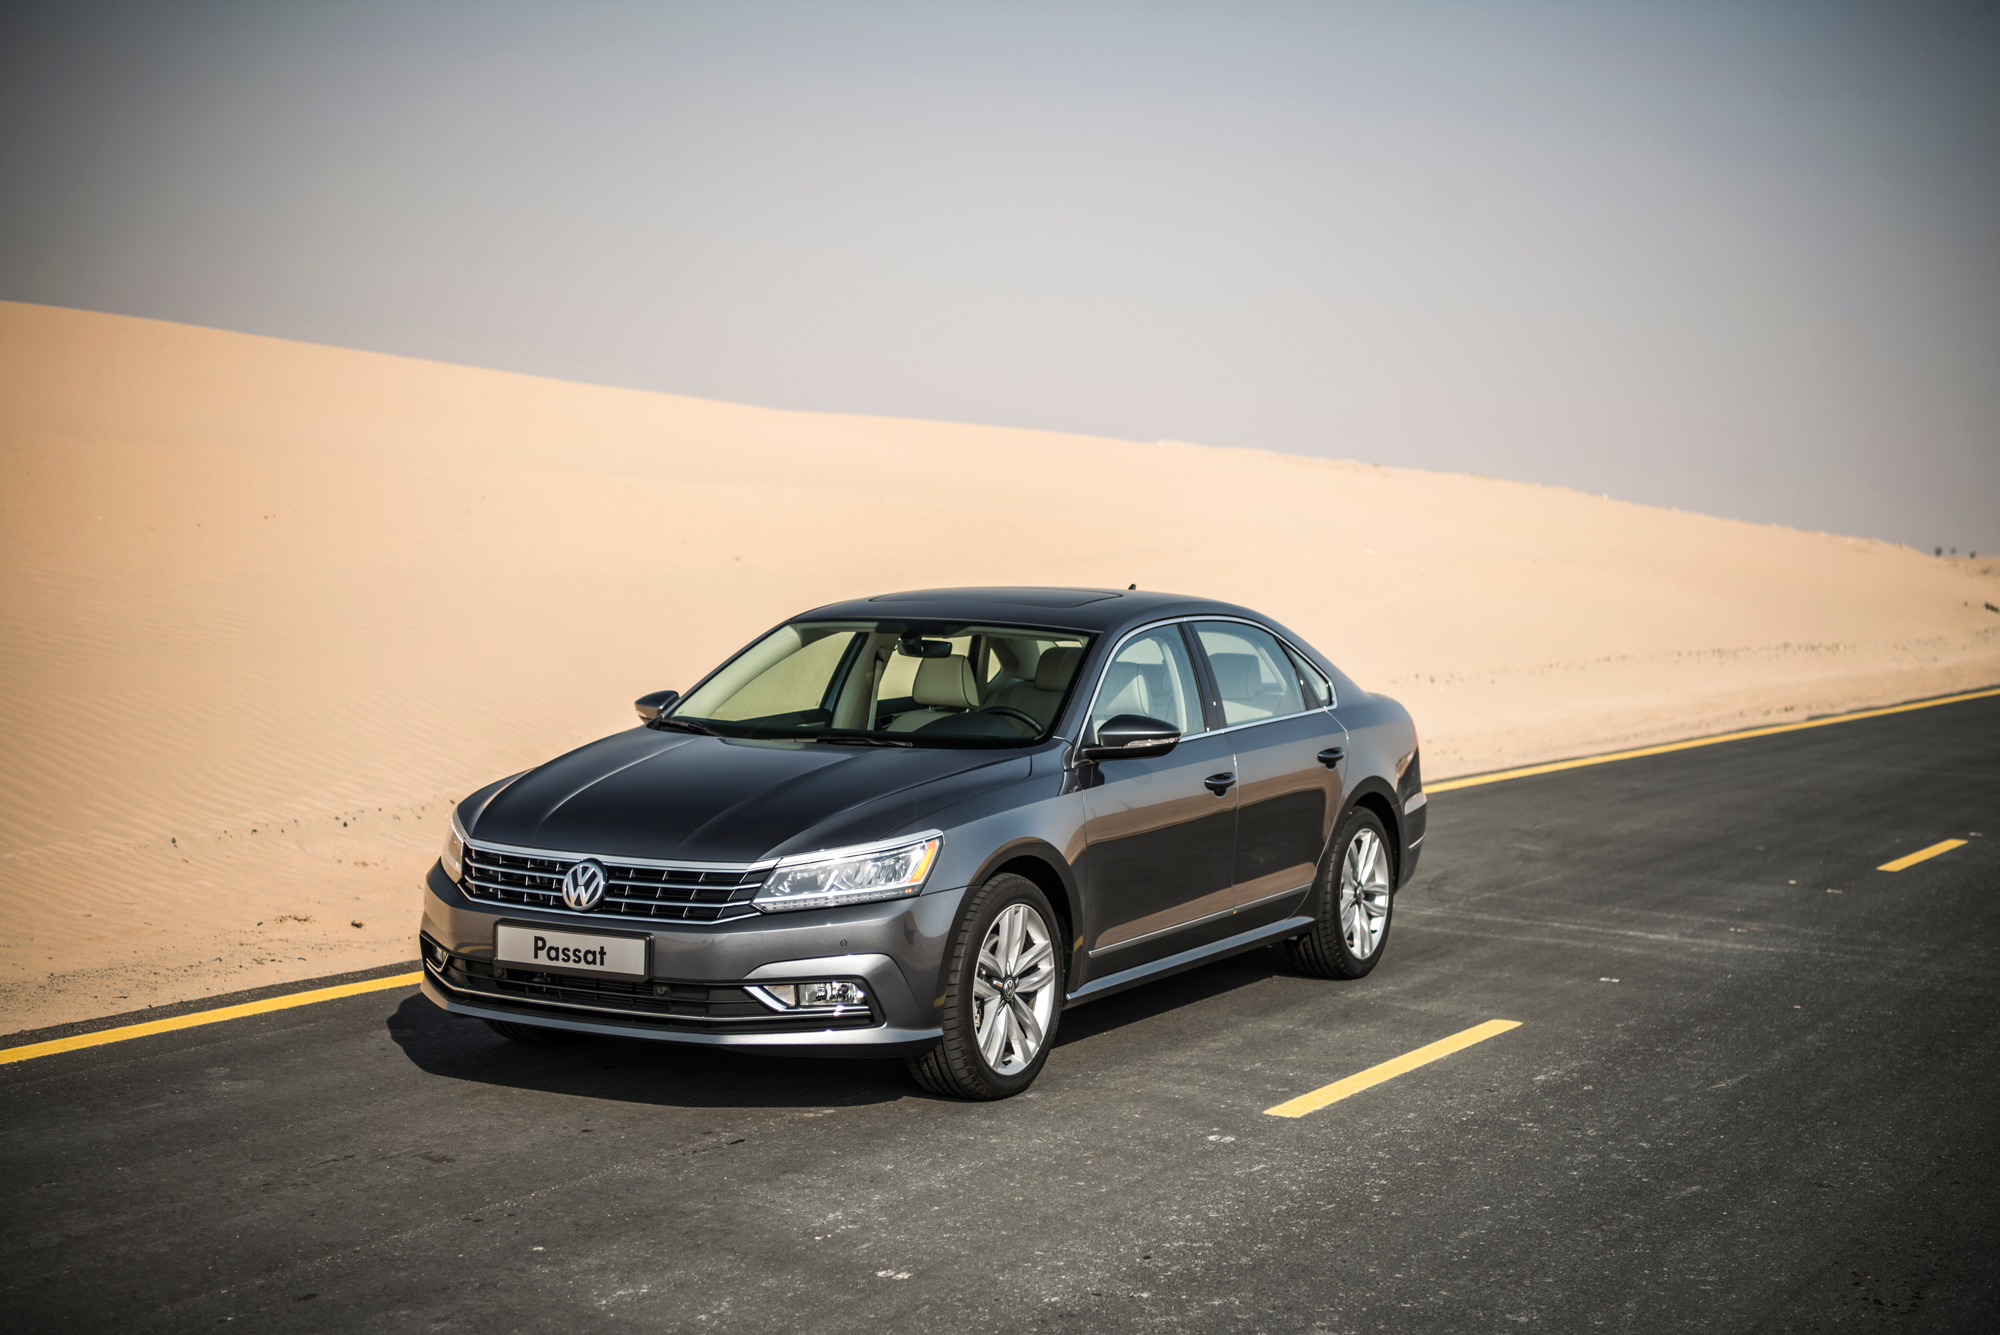 2016 Volkswagen Passat Review - Drive